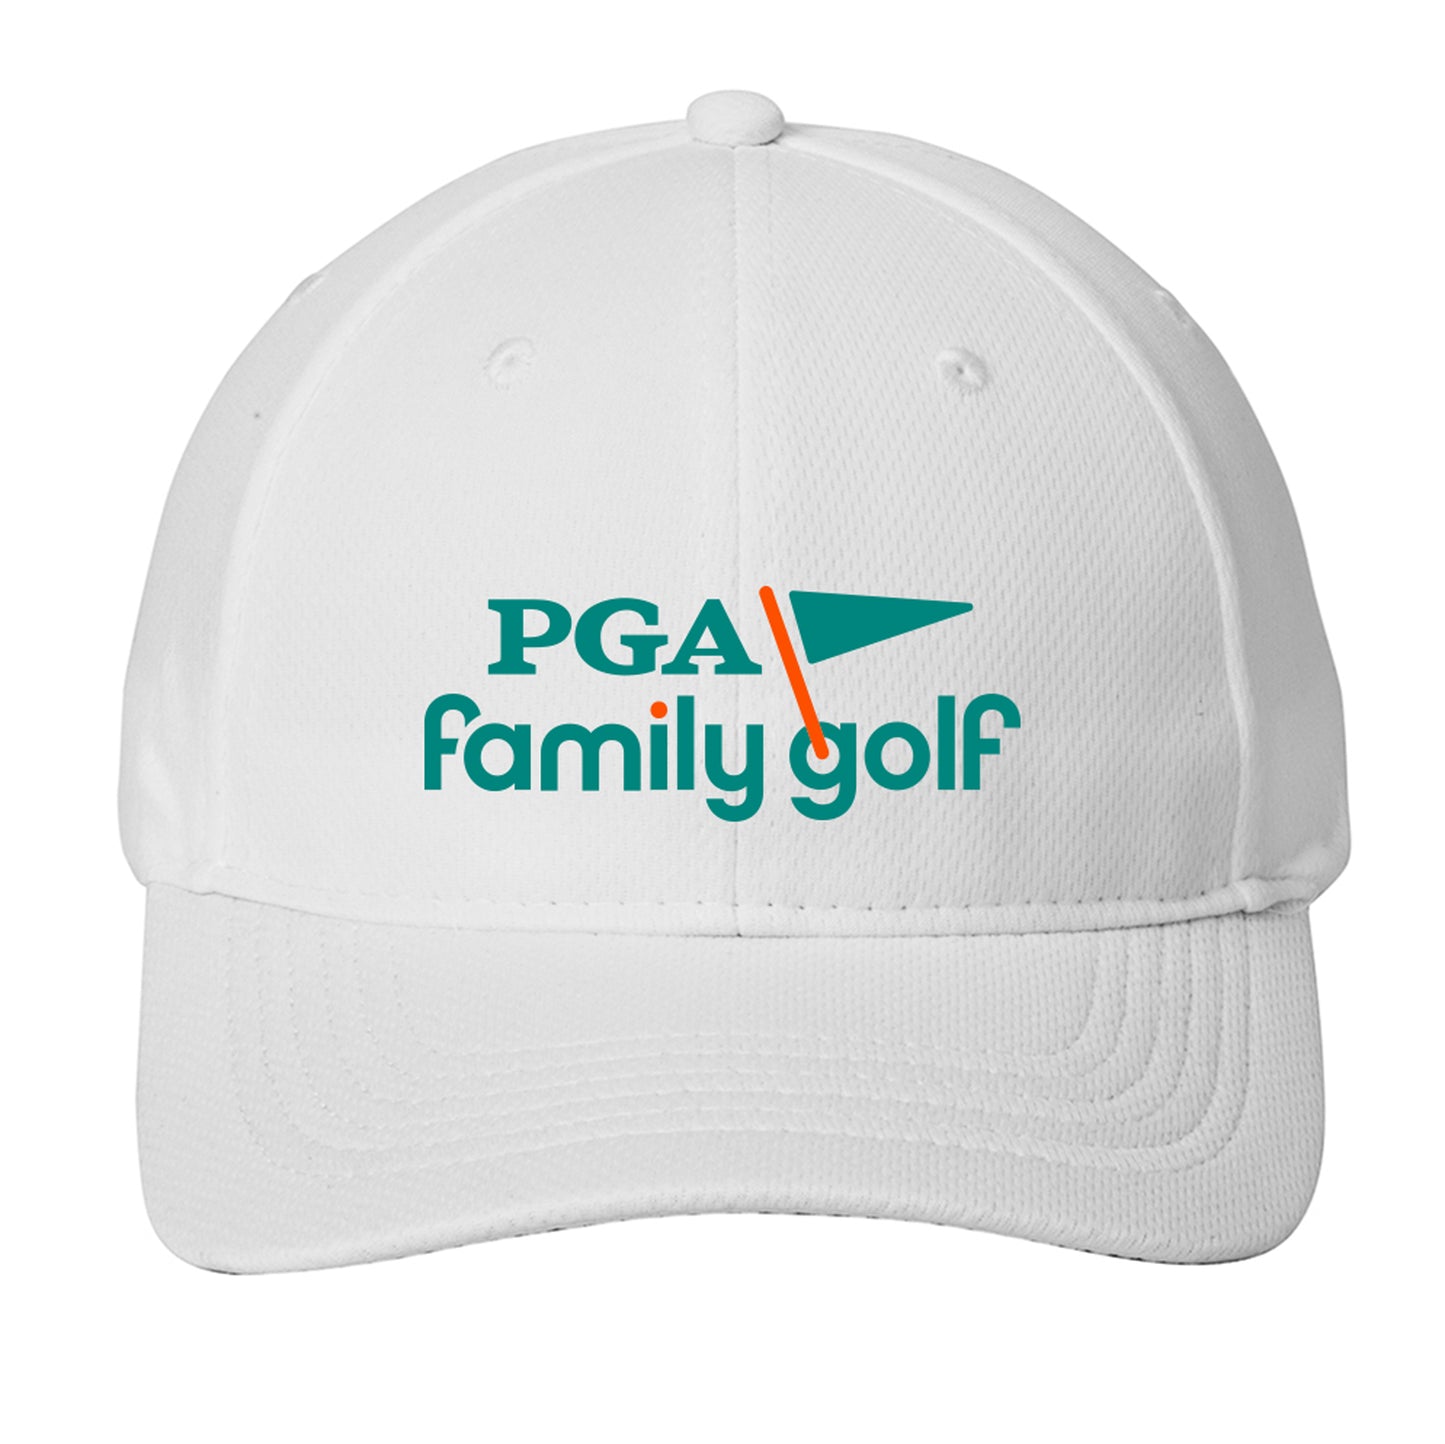 PGA Family Golf Adult Baseball Cap - White